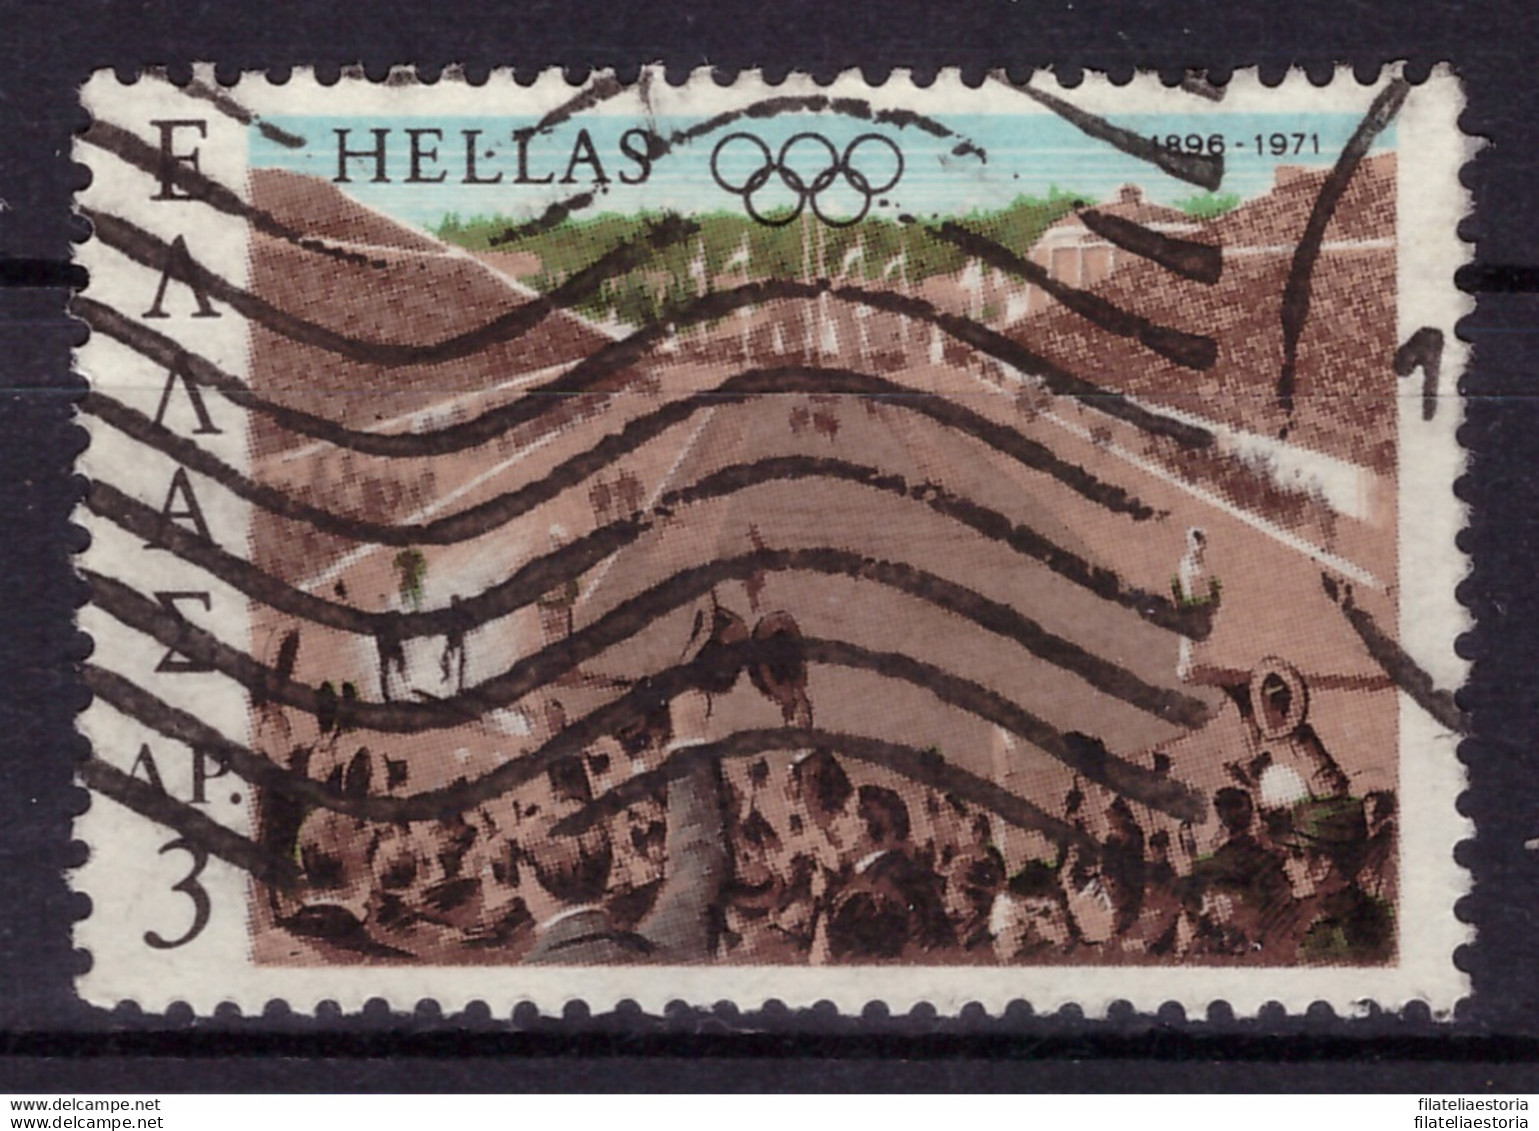 Grèce 1971 - Oblitéré - Jeux Olympiques - Michel Nr. 1072 (gre974) - Used Stamps